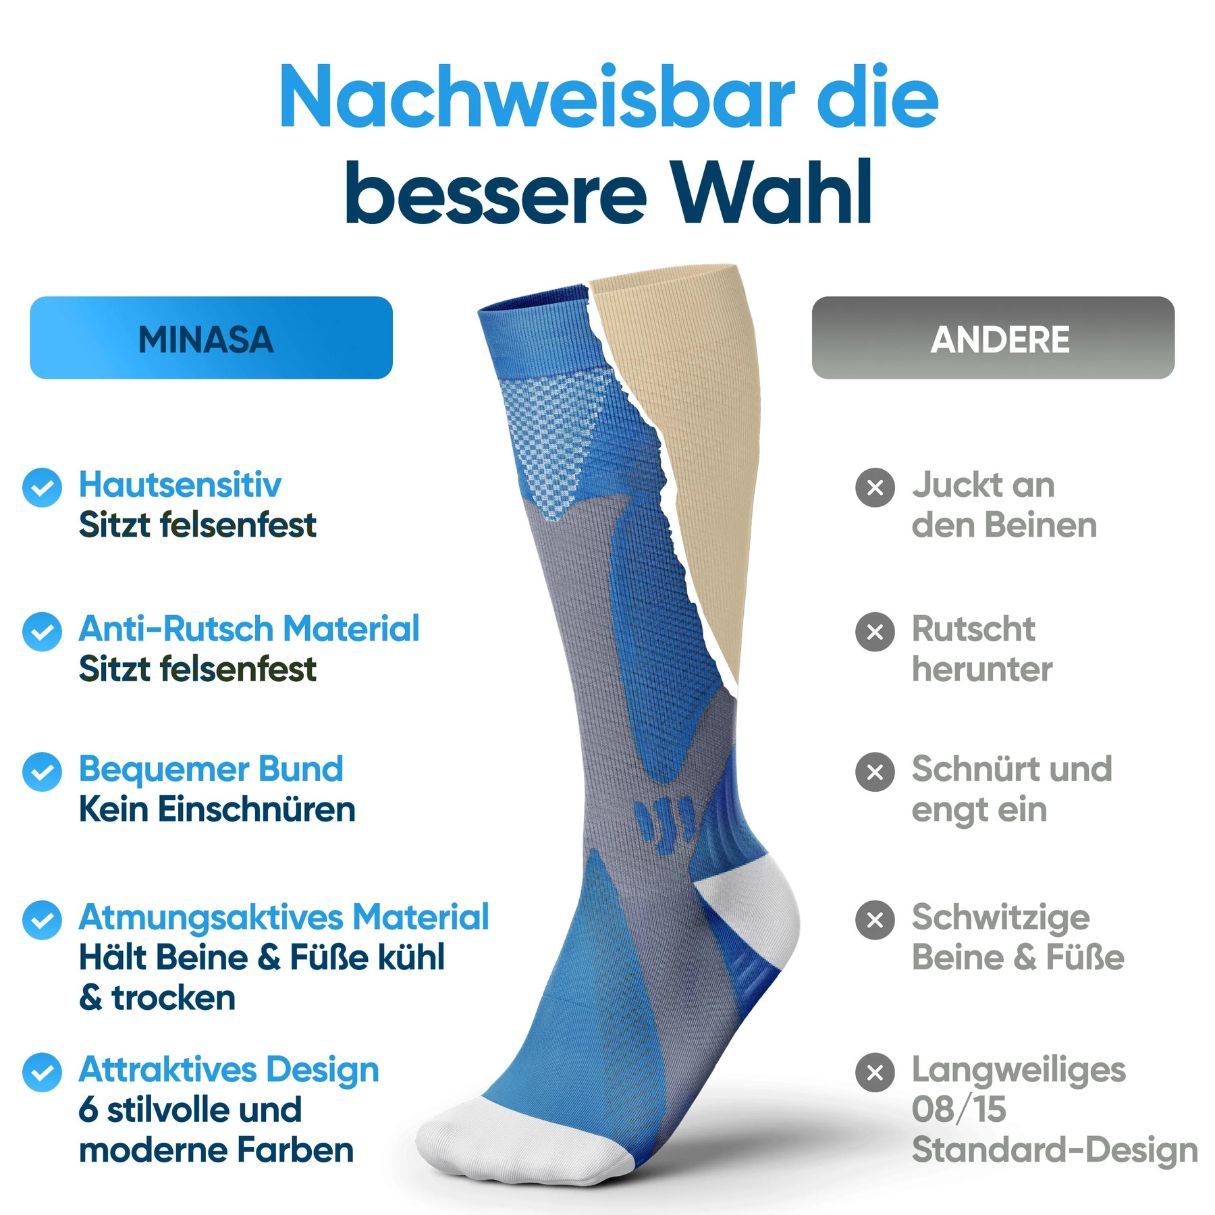 Minasa Kompressionsstrümpfe für schmerzfreie Beine & Füße